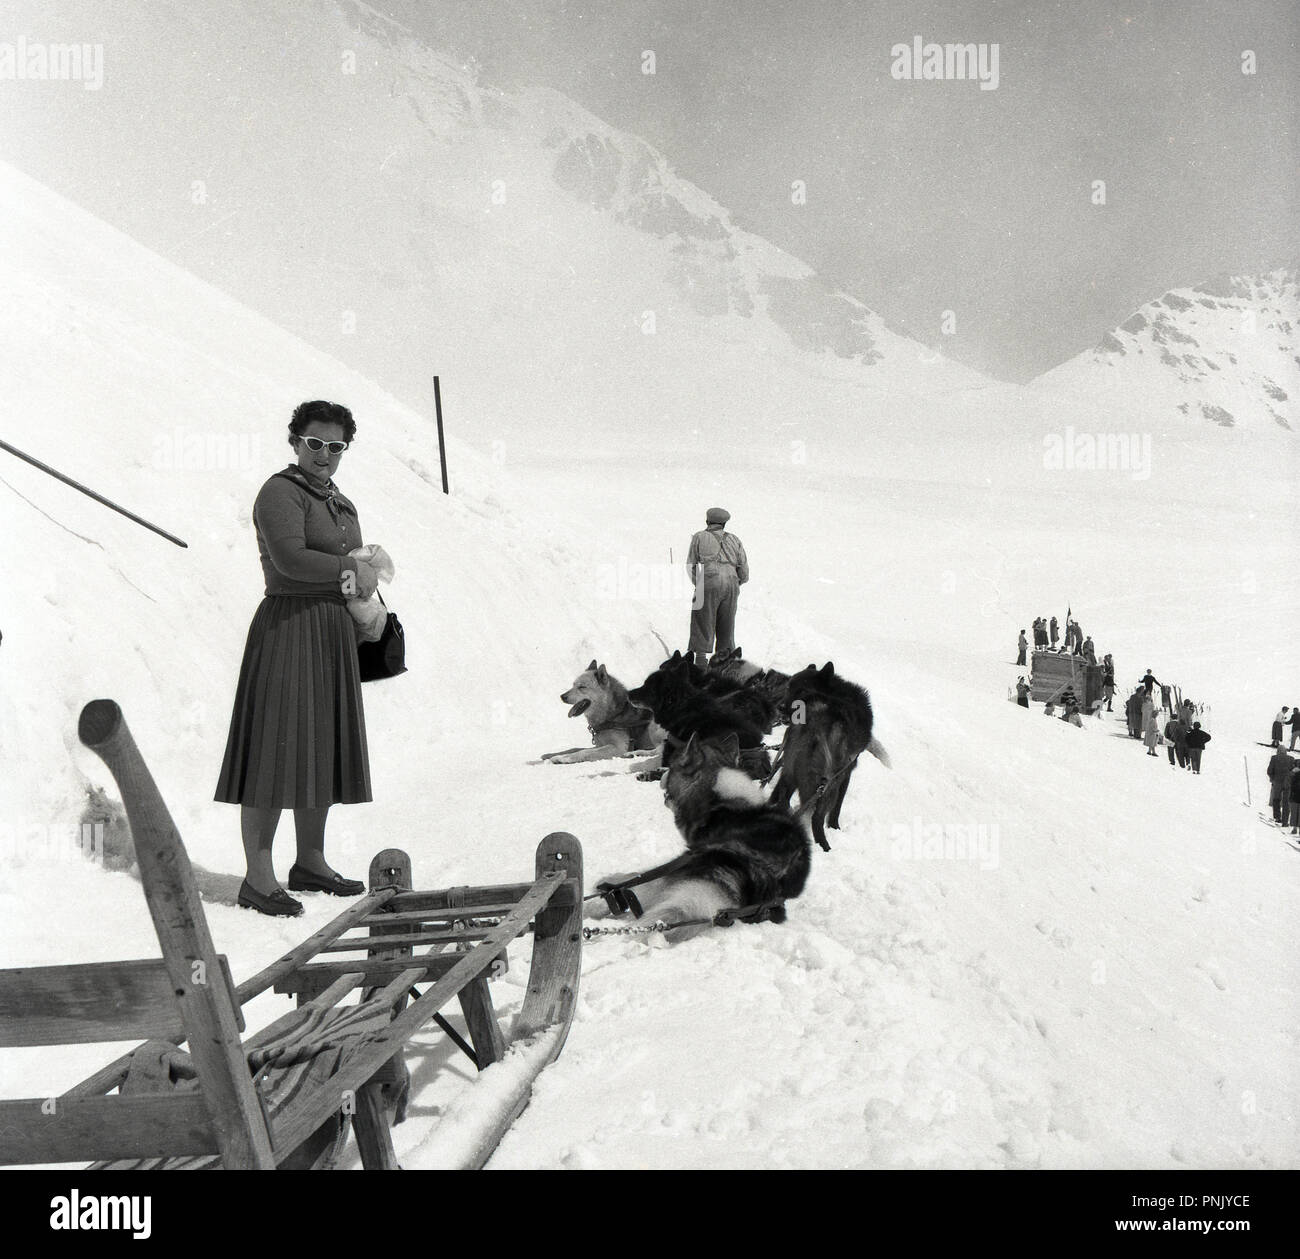 1950, historische, Lady touristische Watche als husky Hunde ziehen einen  hölzernen Schlitten auf die Pisten an der alpinen Skigebiet Arosa, Schweiz  Stockfotografie - Alamy